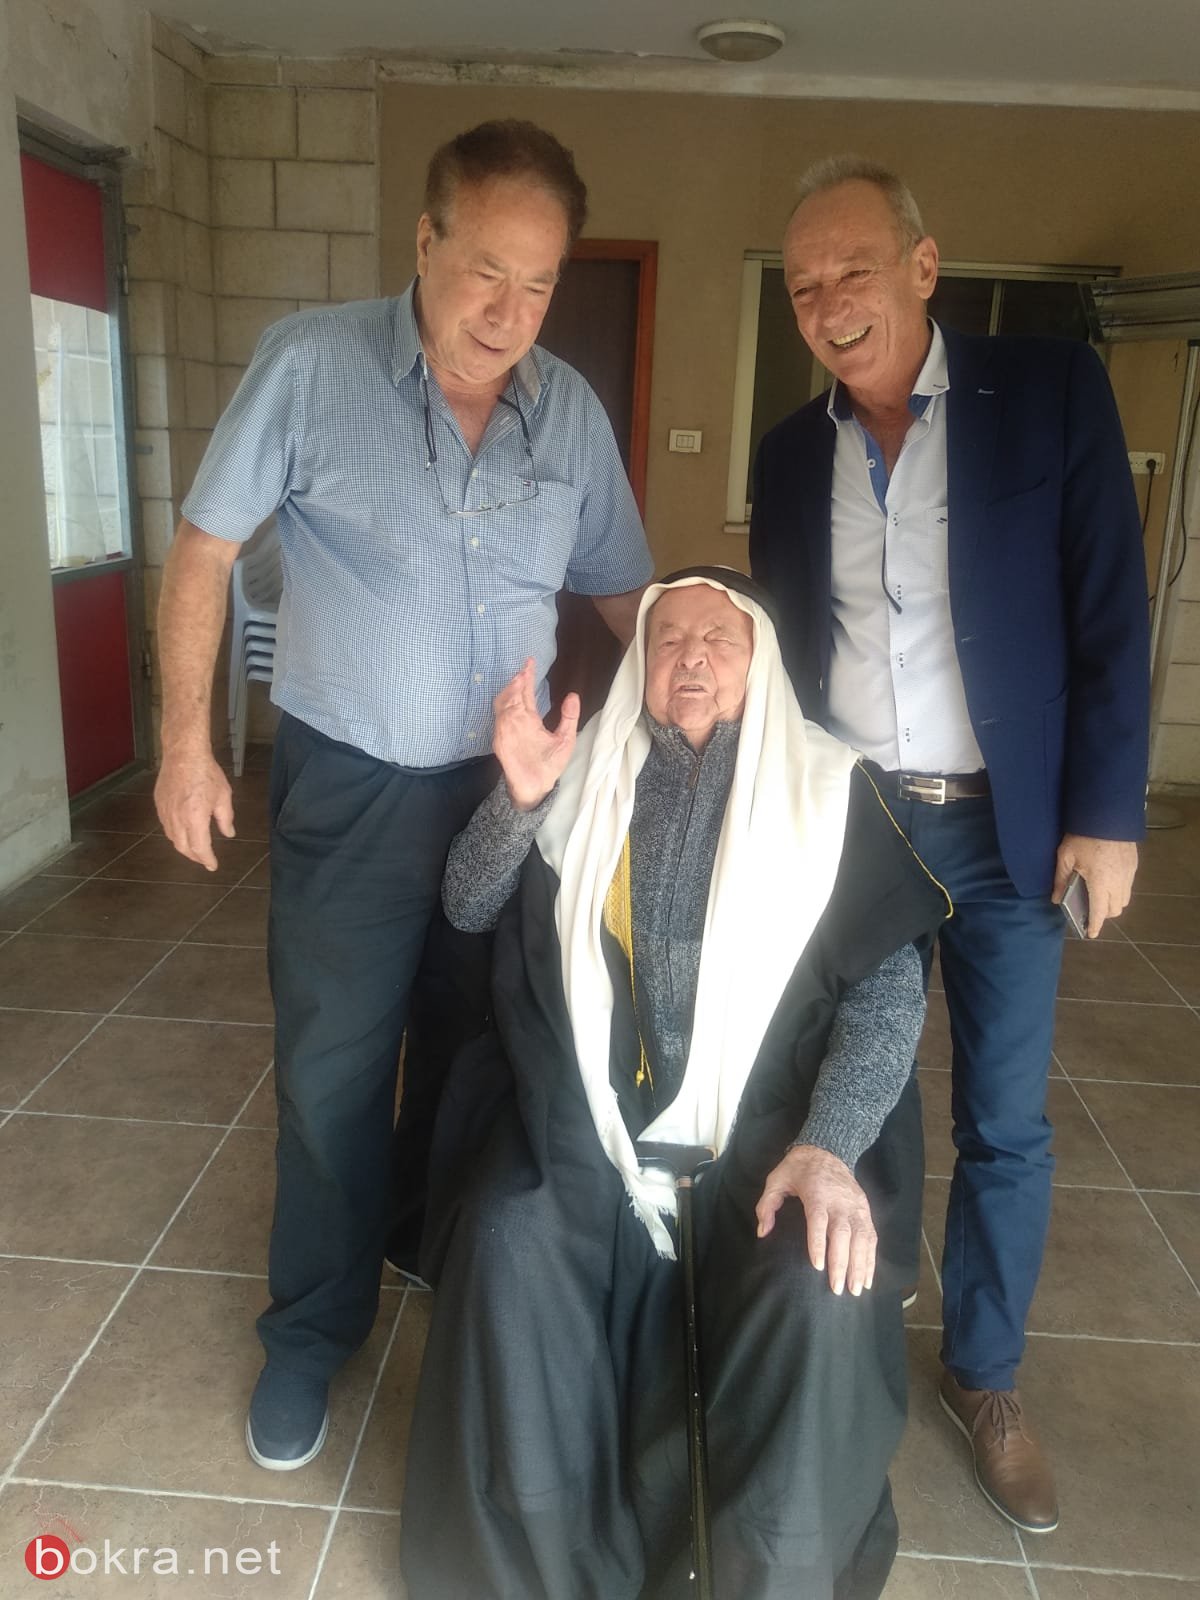 الحاج أحمد أبو عيّاش (102 عامًا) من عيلوط، يدلي بصوته ويدعو بالتصويت للمشتركة-5